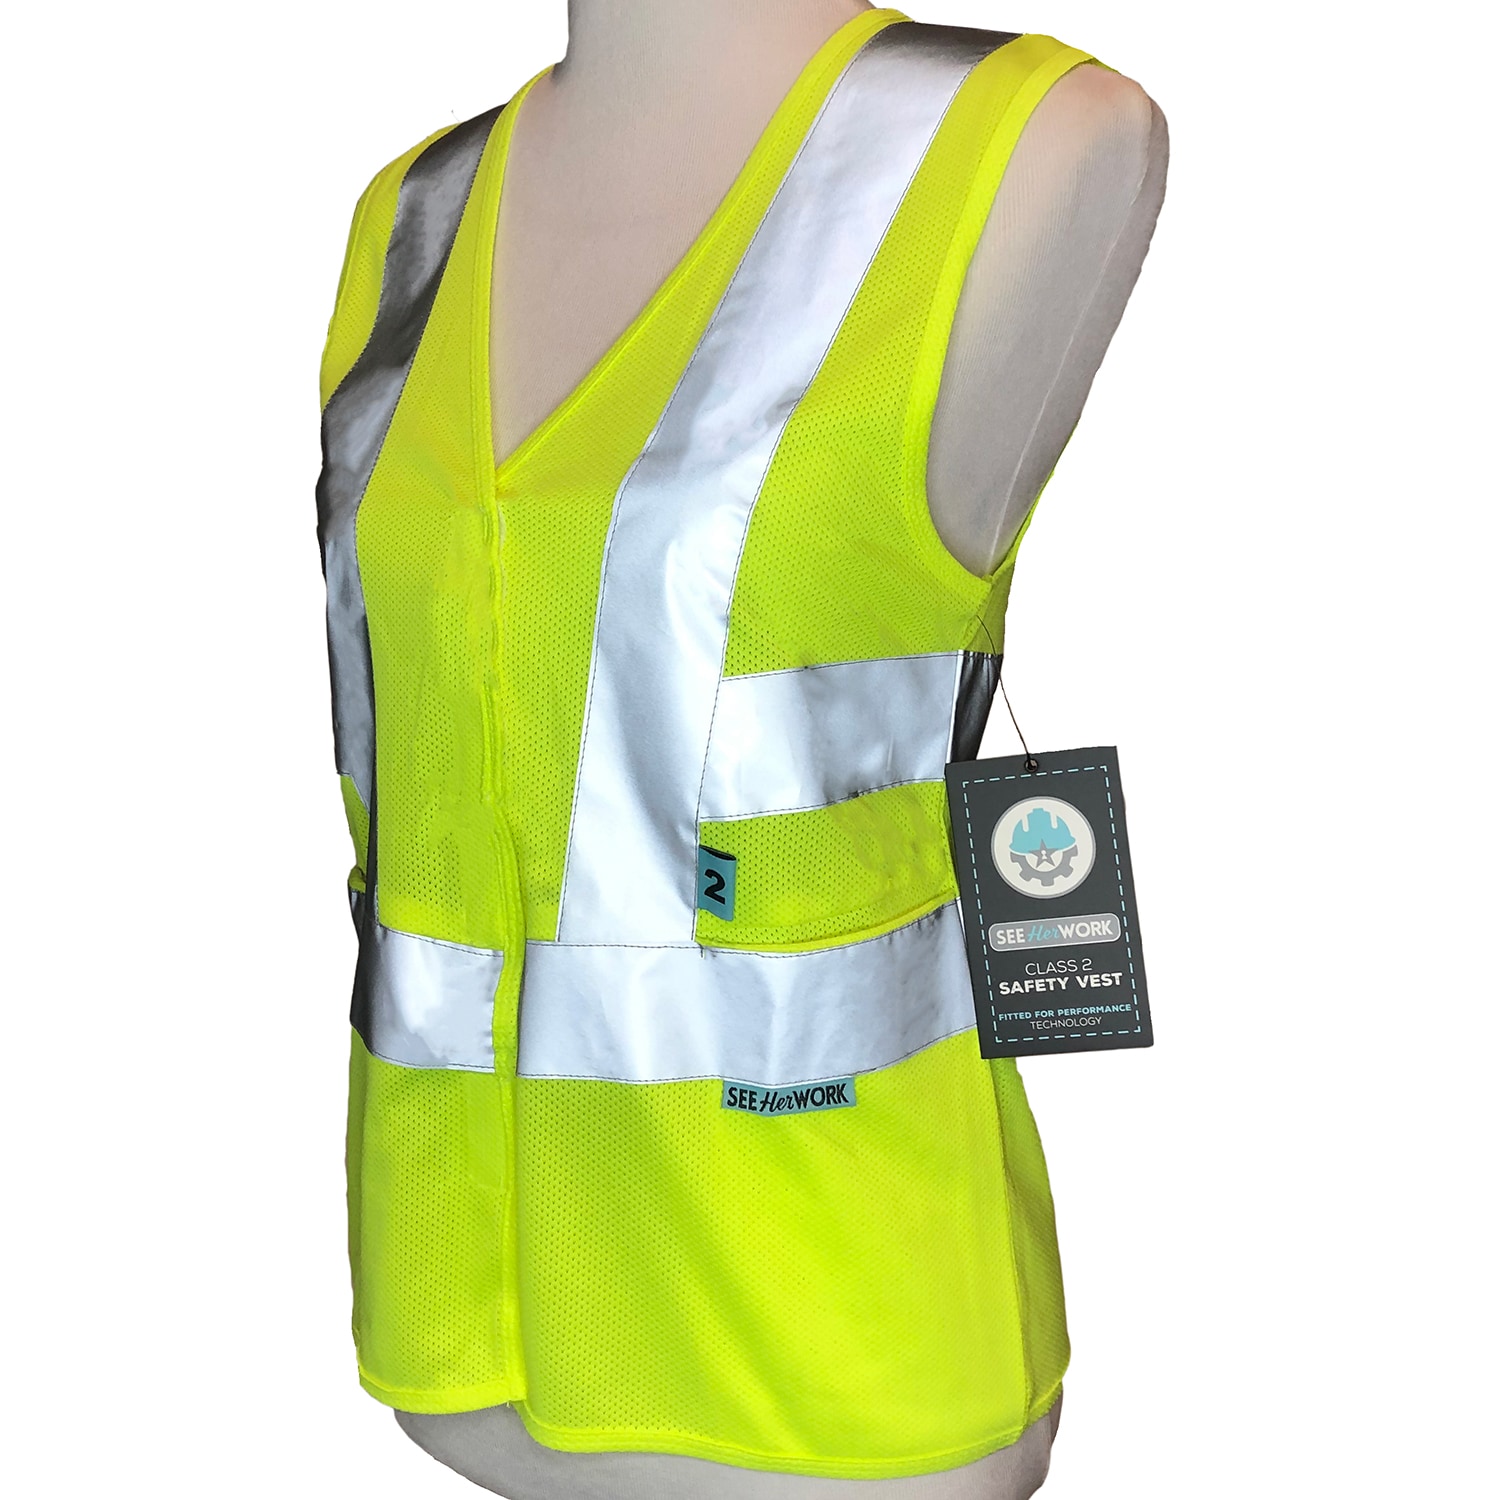 Karat High Visibility Reflective Safety Vest